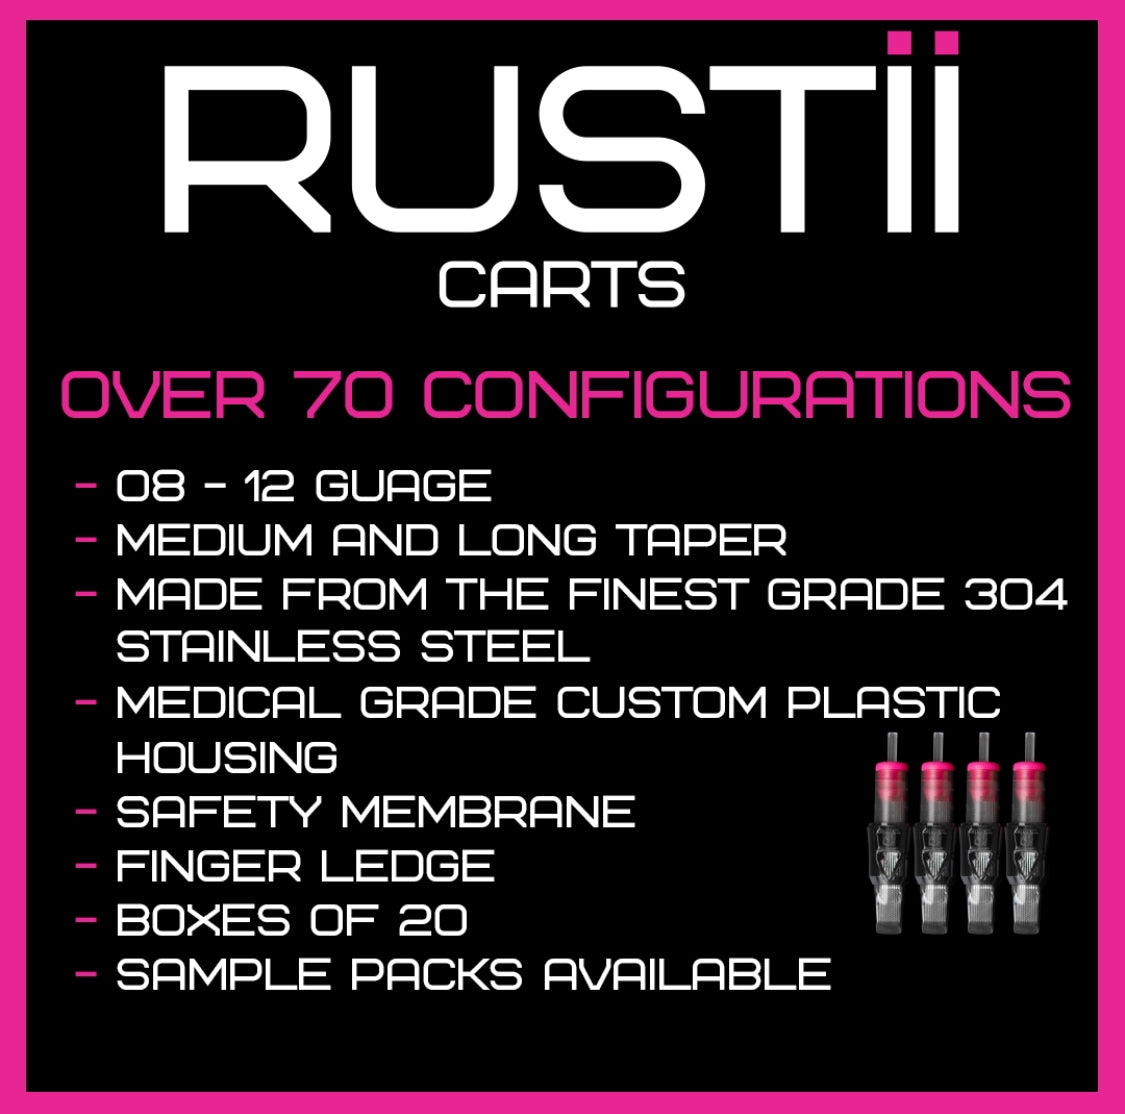 RUSTII Tattoo Needle Cartridges - 10s - MT